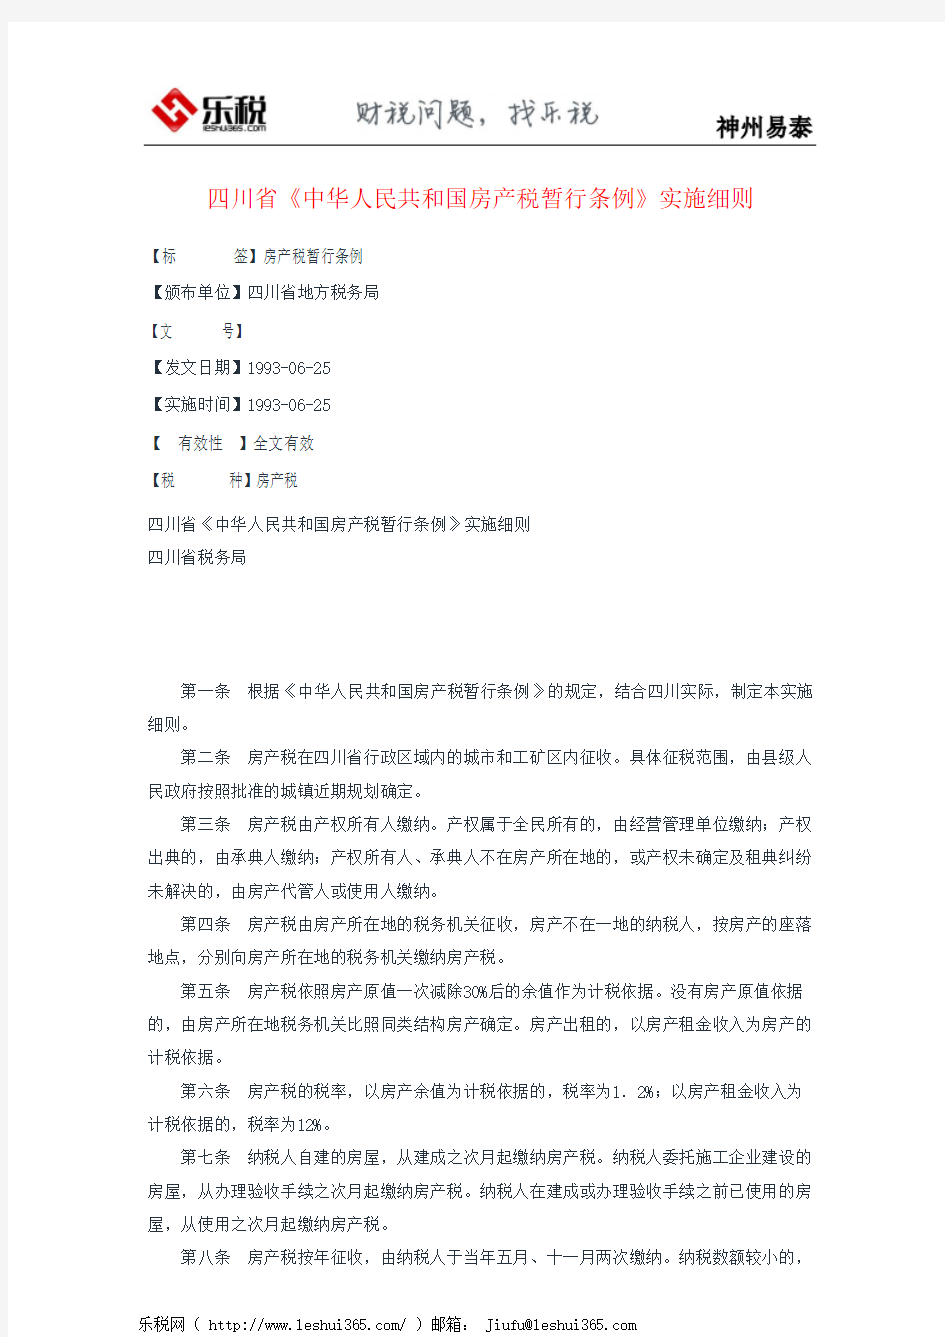 四川省《中华人民共和国房产税暂行条例》实施细则